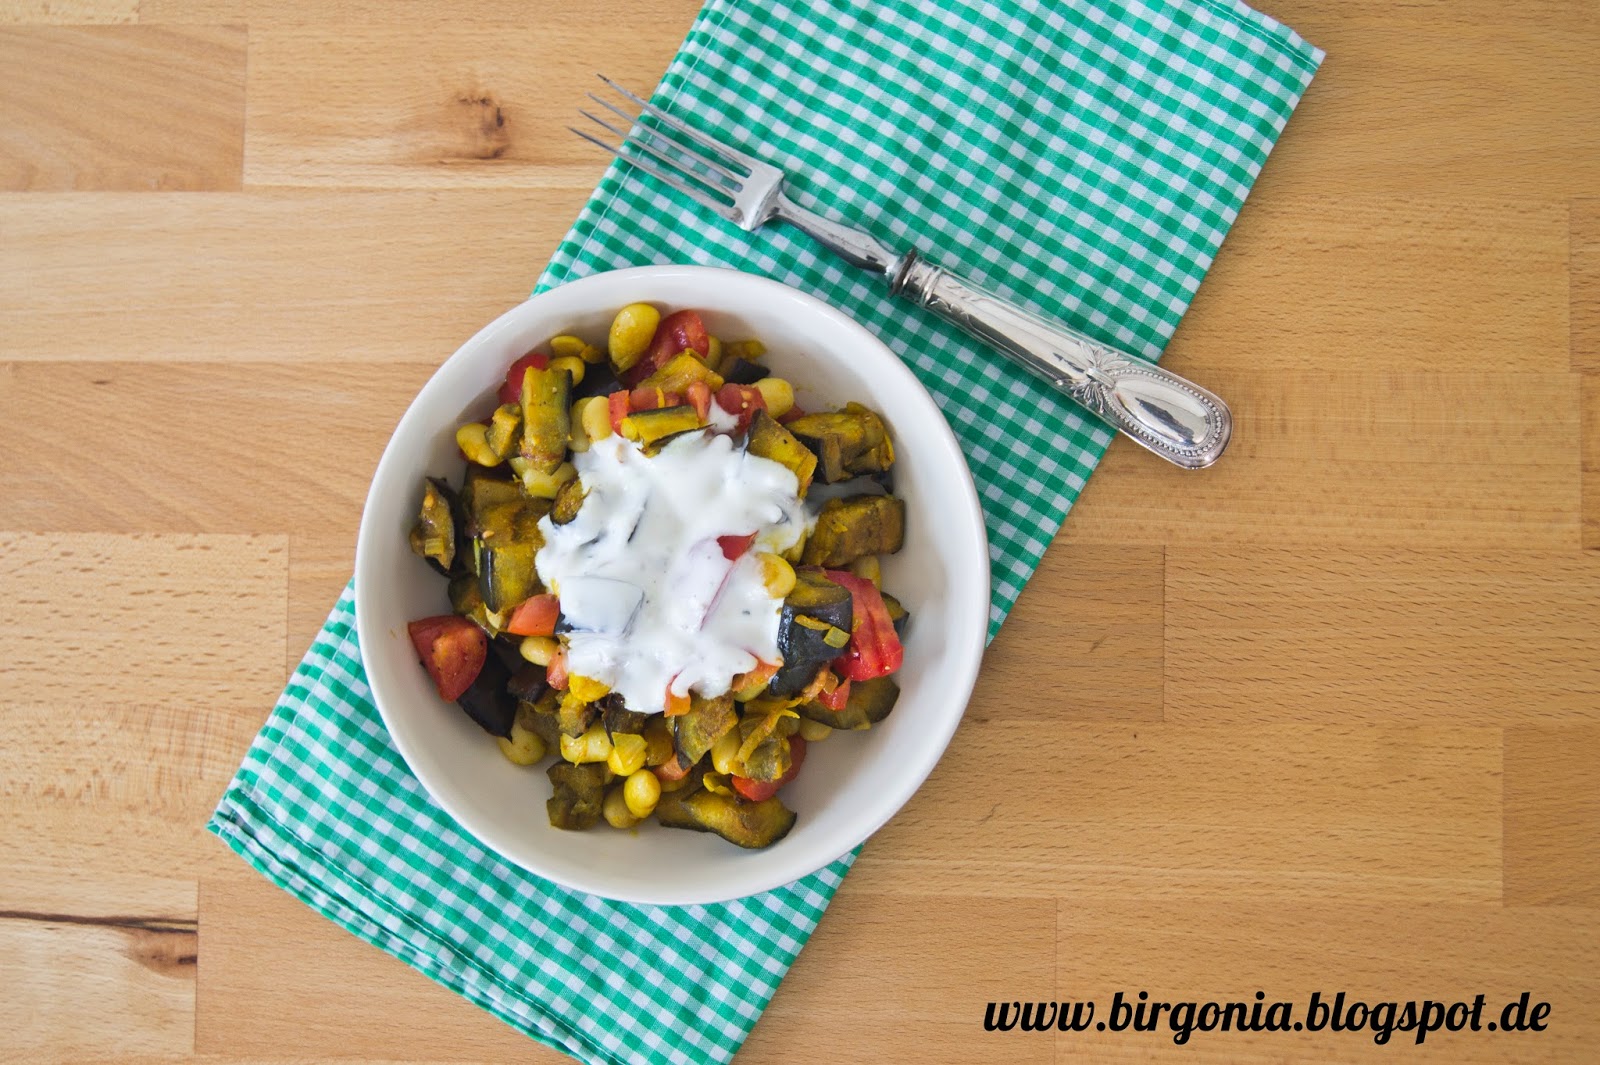 birgonia: Lauwarmer Auberginen-Bohnen-Salat mit Joghurt-Dip